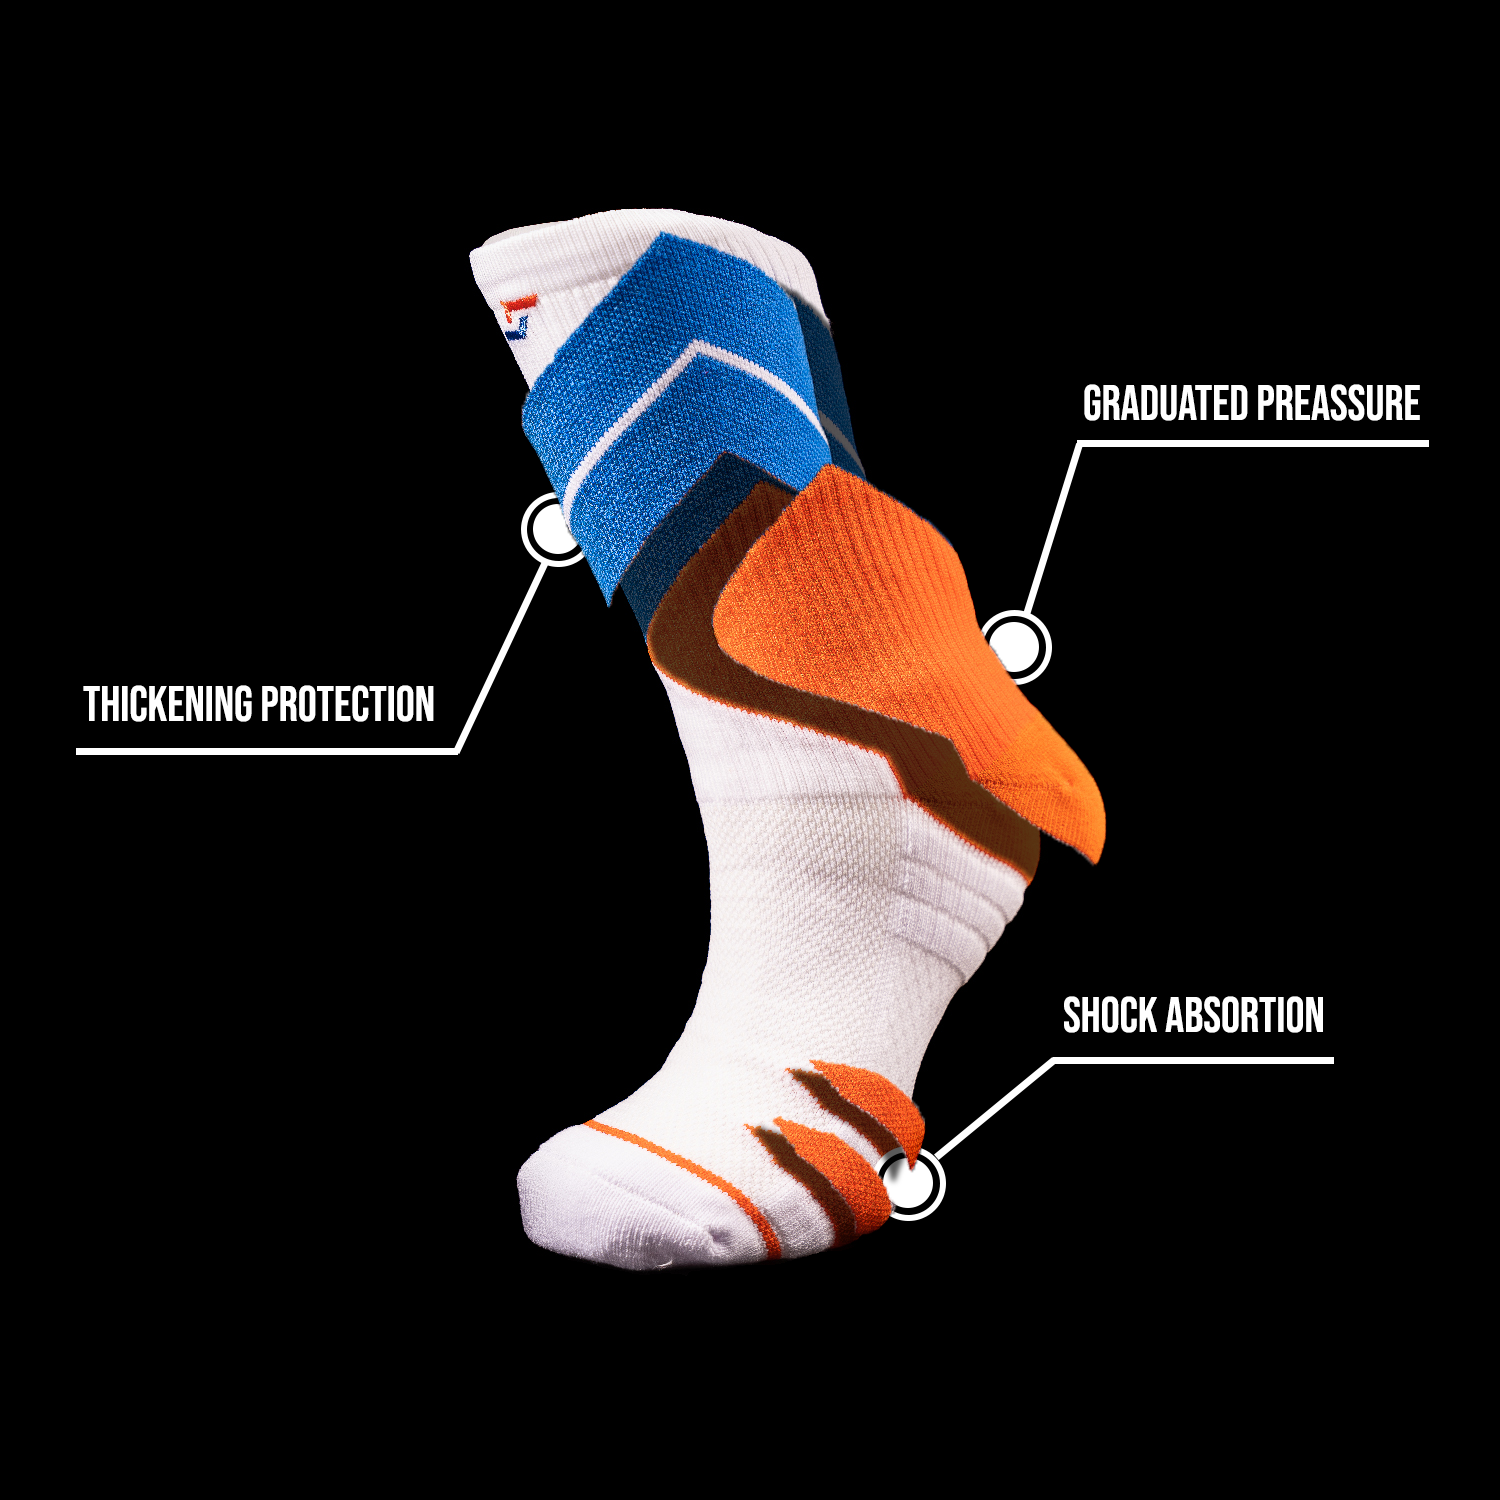 Can You Wear Socks in Kickboxing? - SportsRec